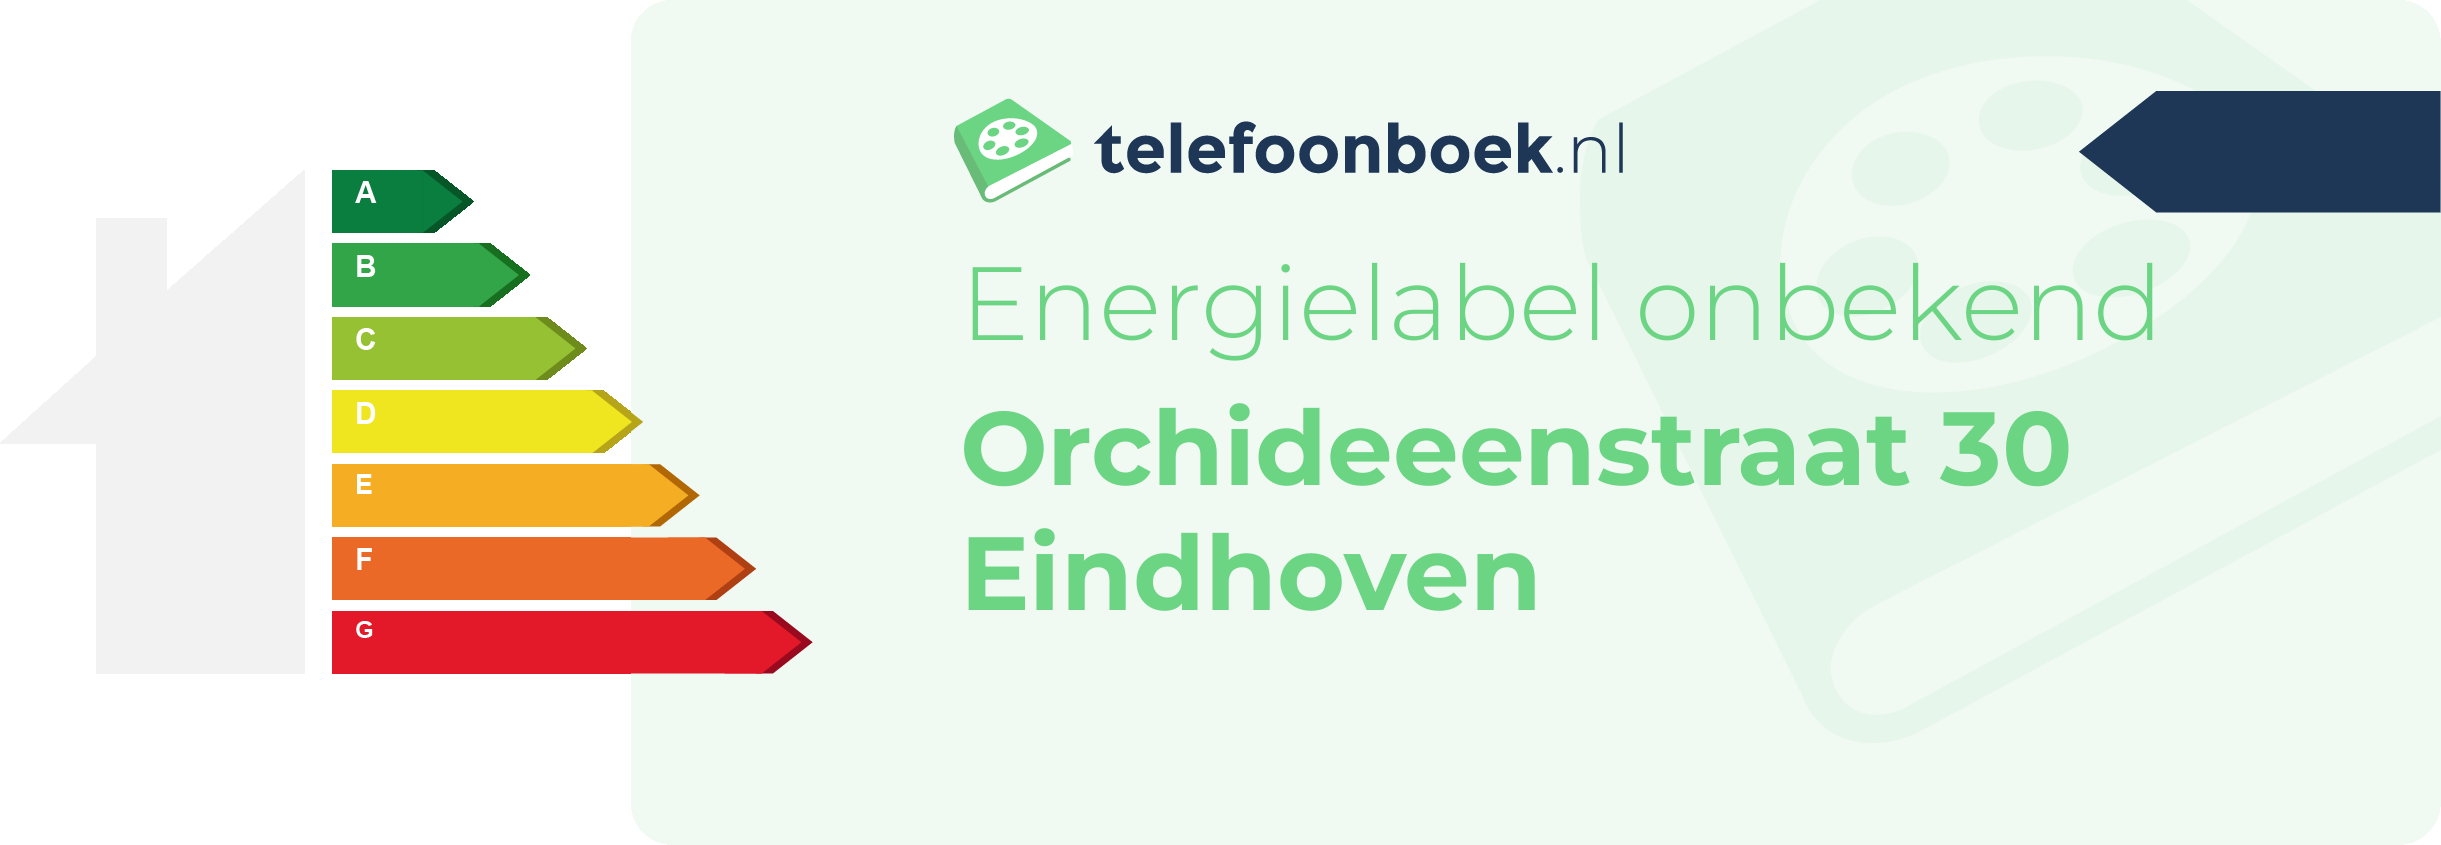 Energielabel Orchideeenstraat 30 Eindhoven